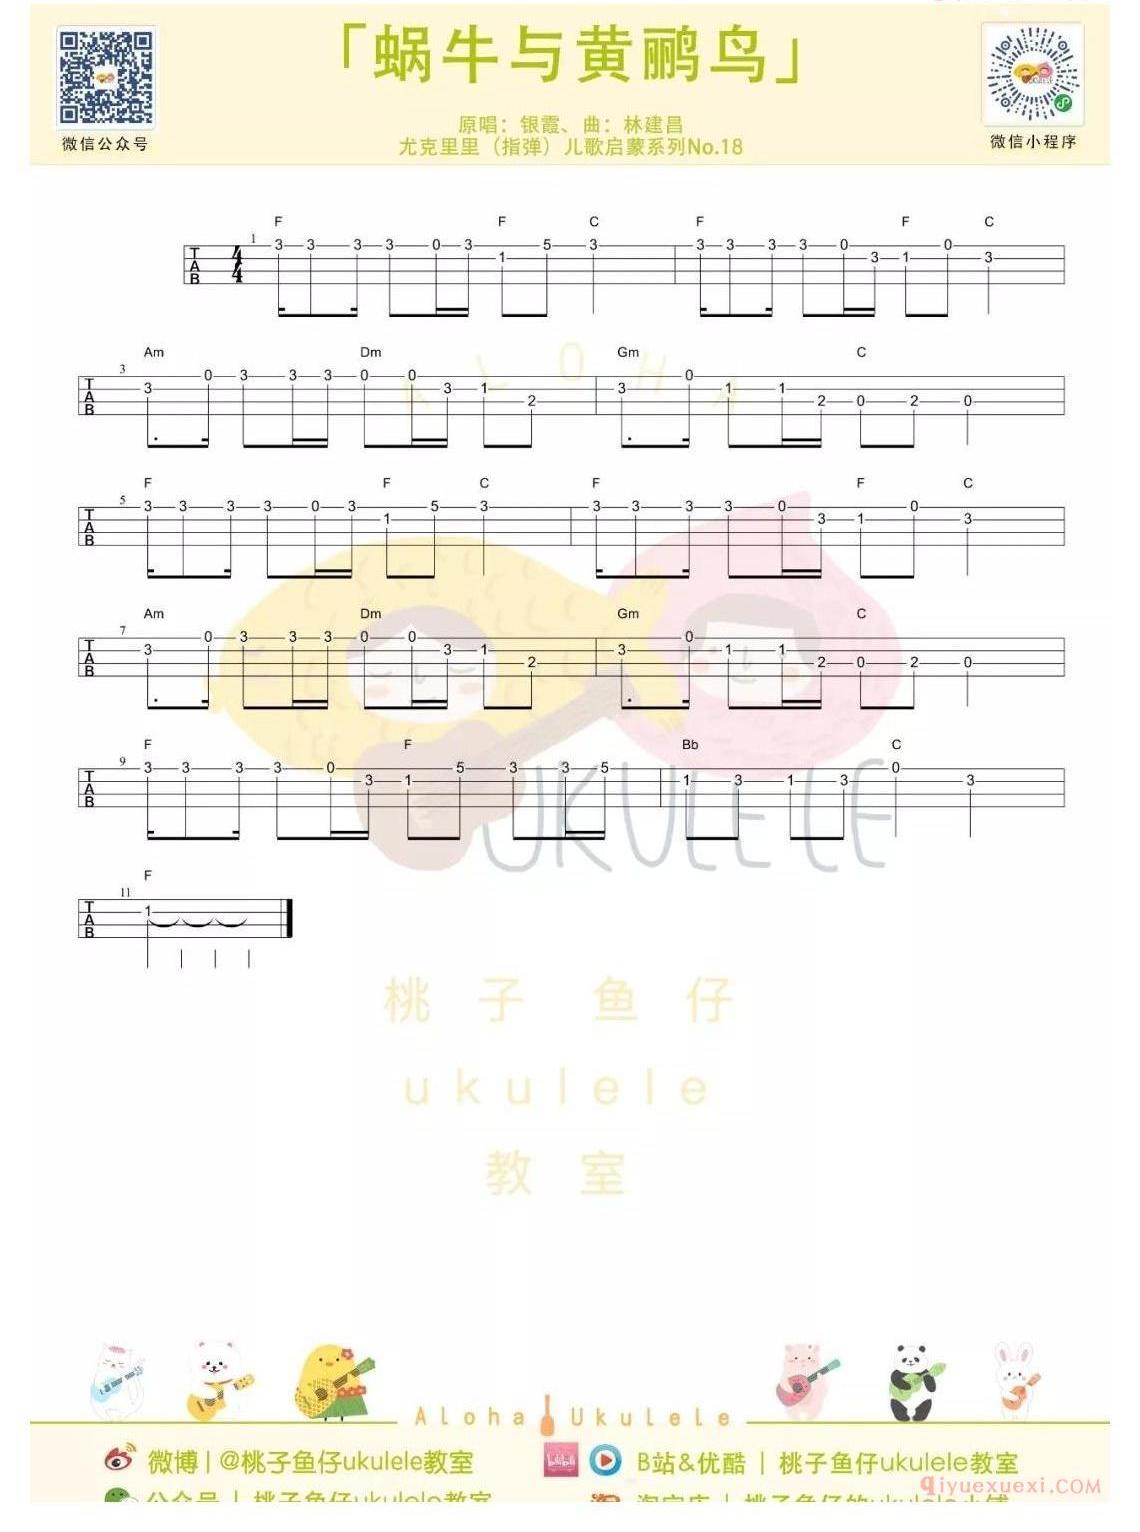 ukulele新手歌曲谱_蜗牛与黄鹂鸟_ukulele儿歌指弹